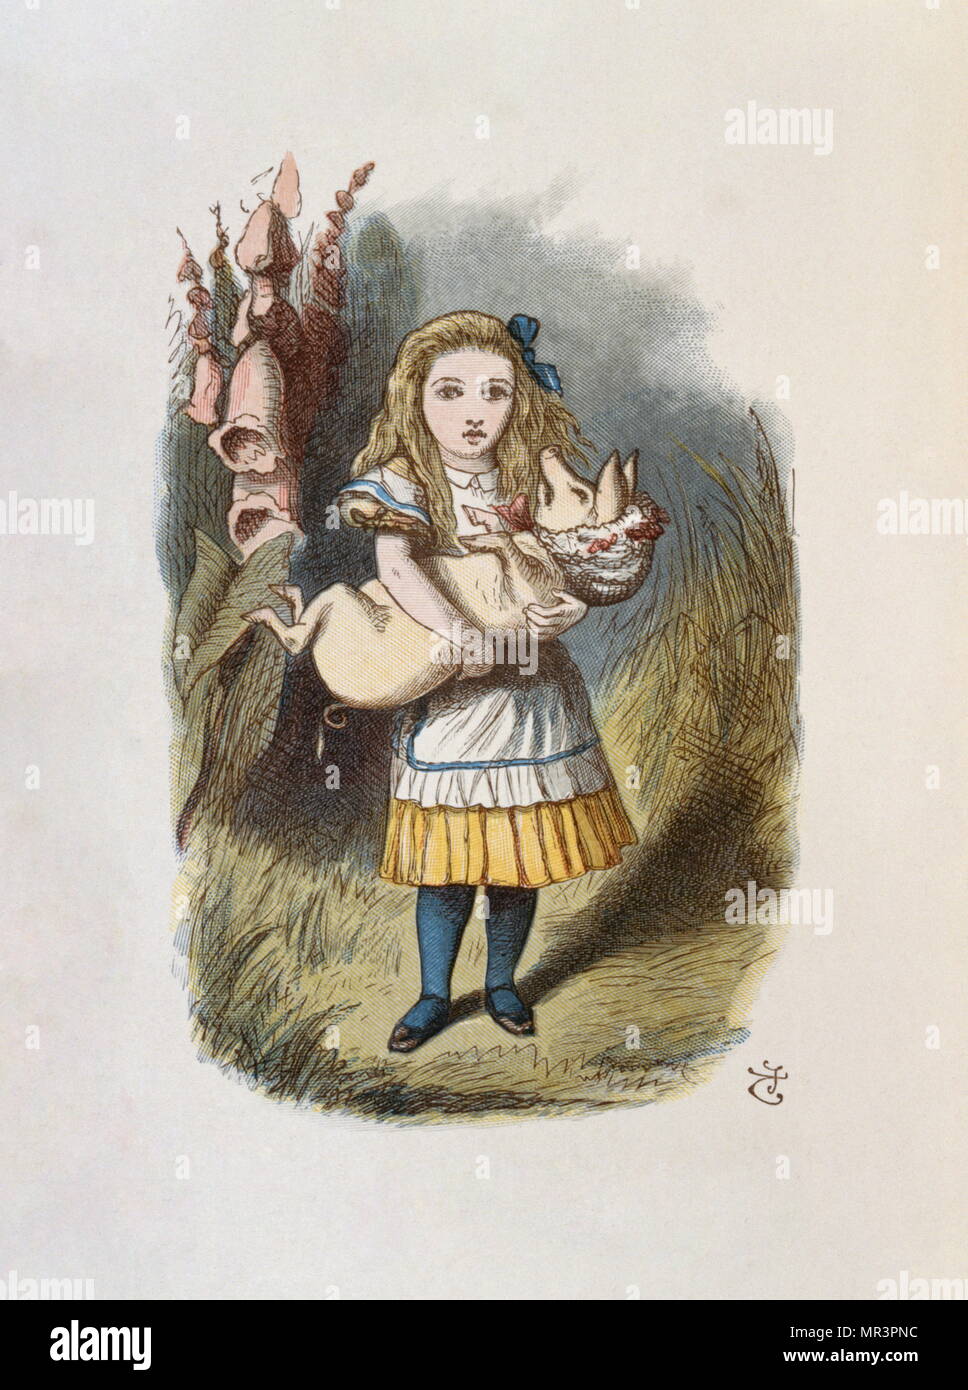 Illustrazione di Tenniel, dal 1890 edizione di "Alice nel paese delle meraviglie" da Lewis Carroll. Foto Stock